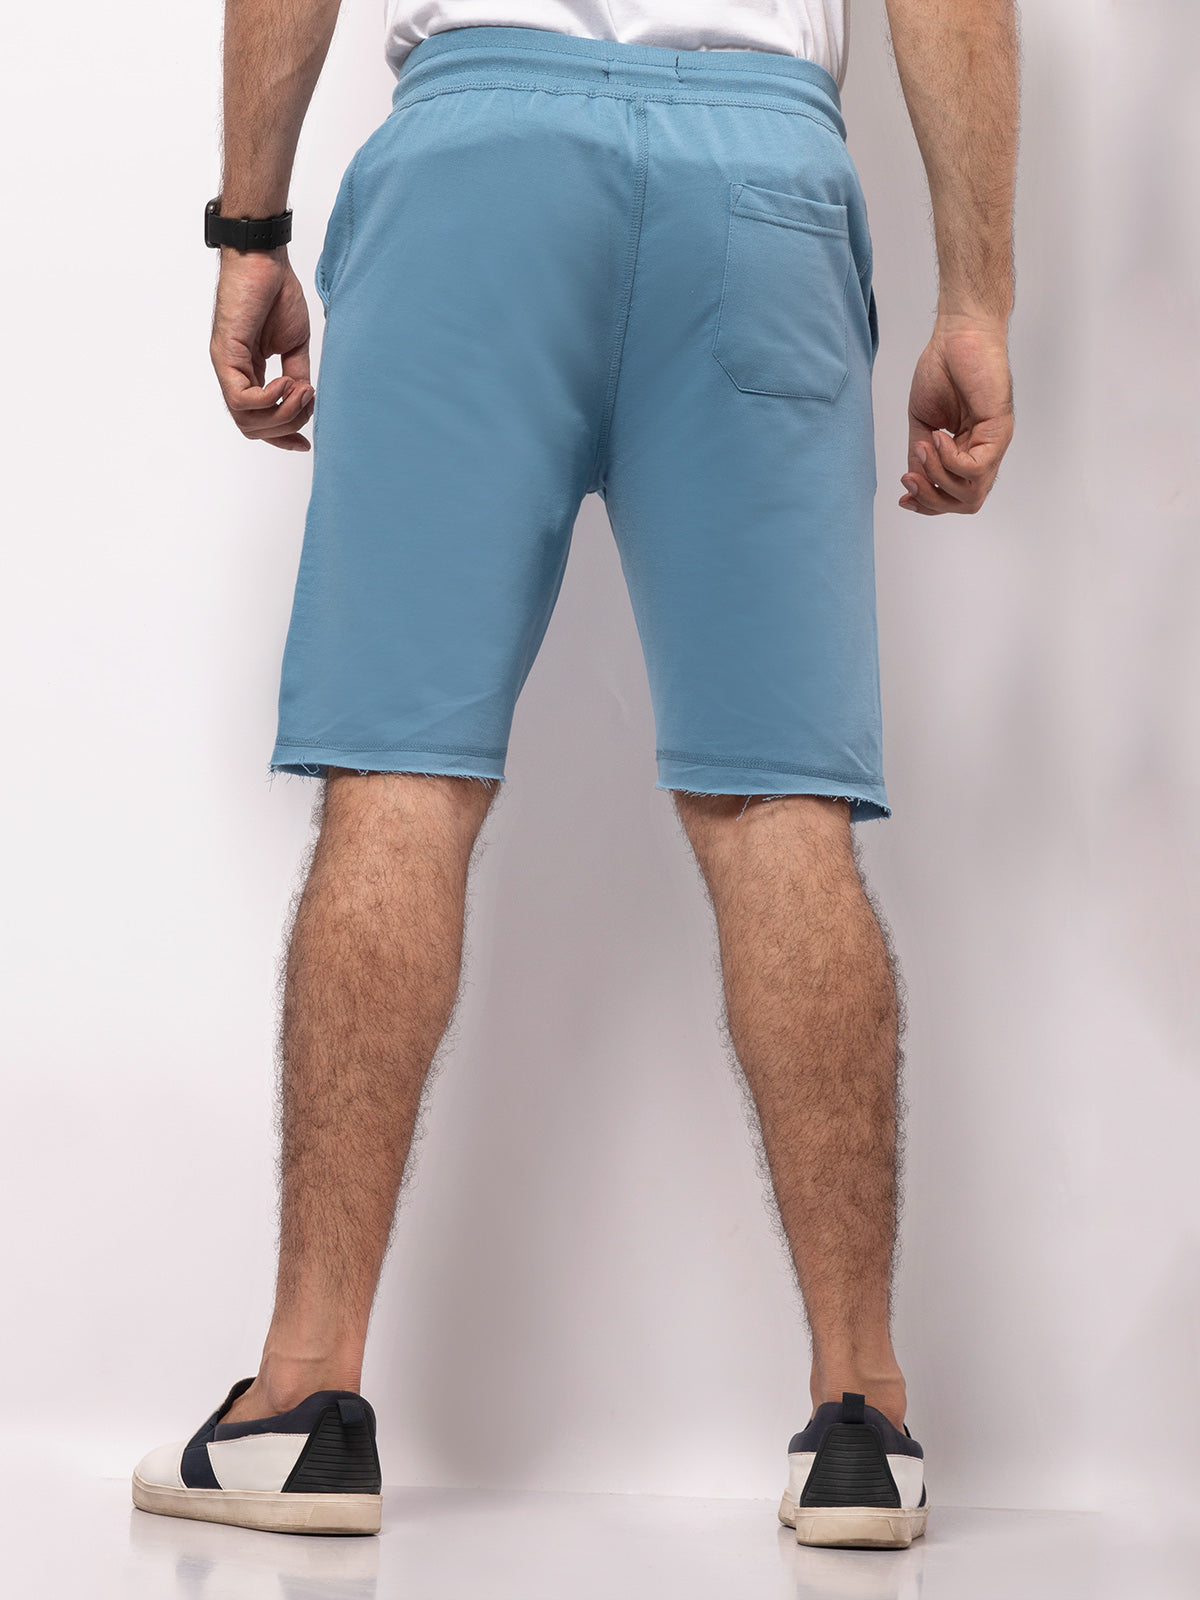 Men's Teal Blue Shorts - FMBSK20-006